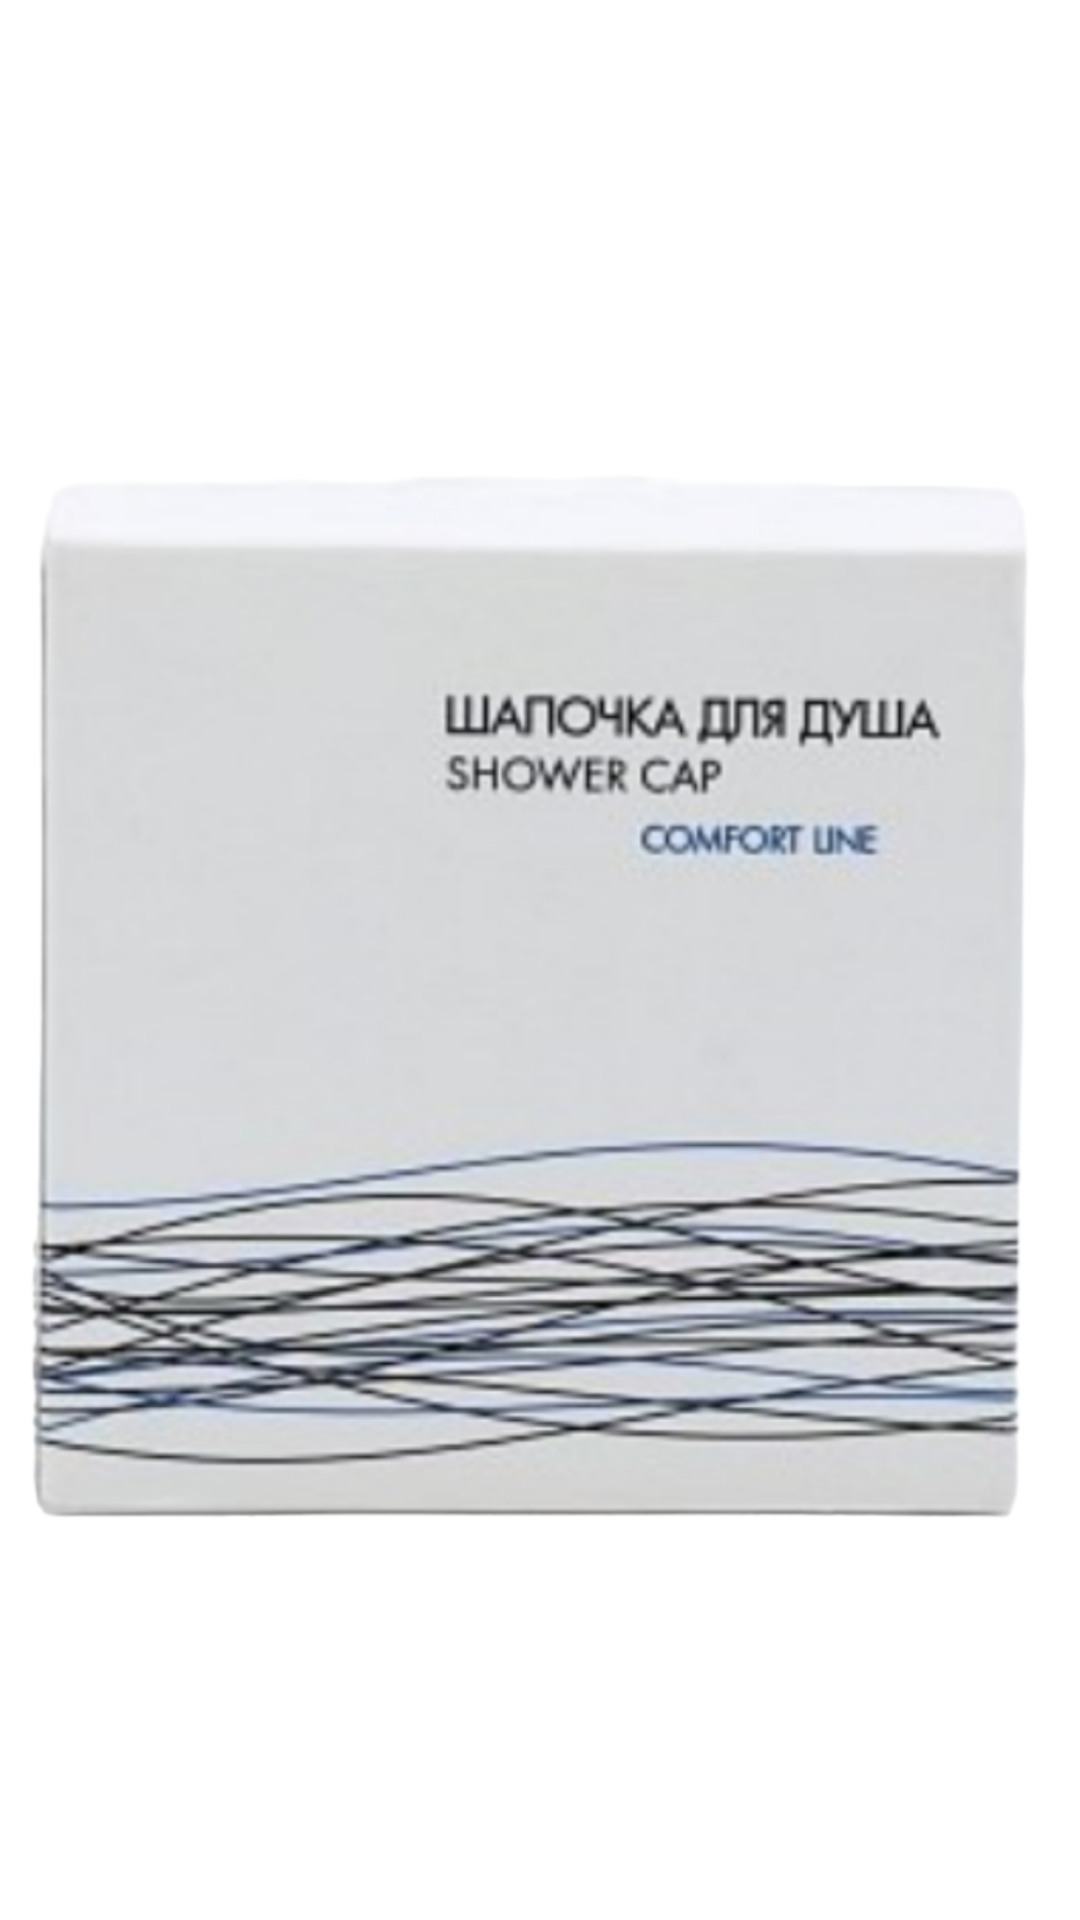 Шапочки для душа Comfort Line картон 250 шт мыло для рук comfort line флопак 13 г 50 шт